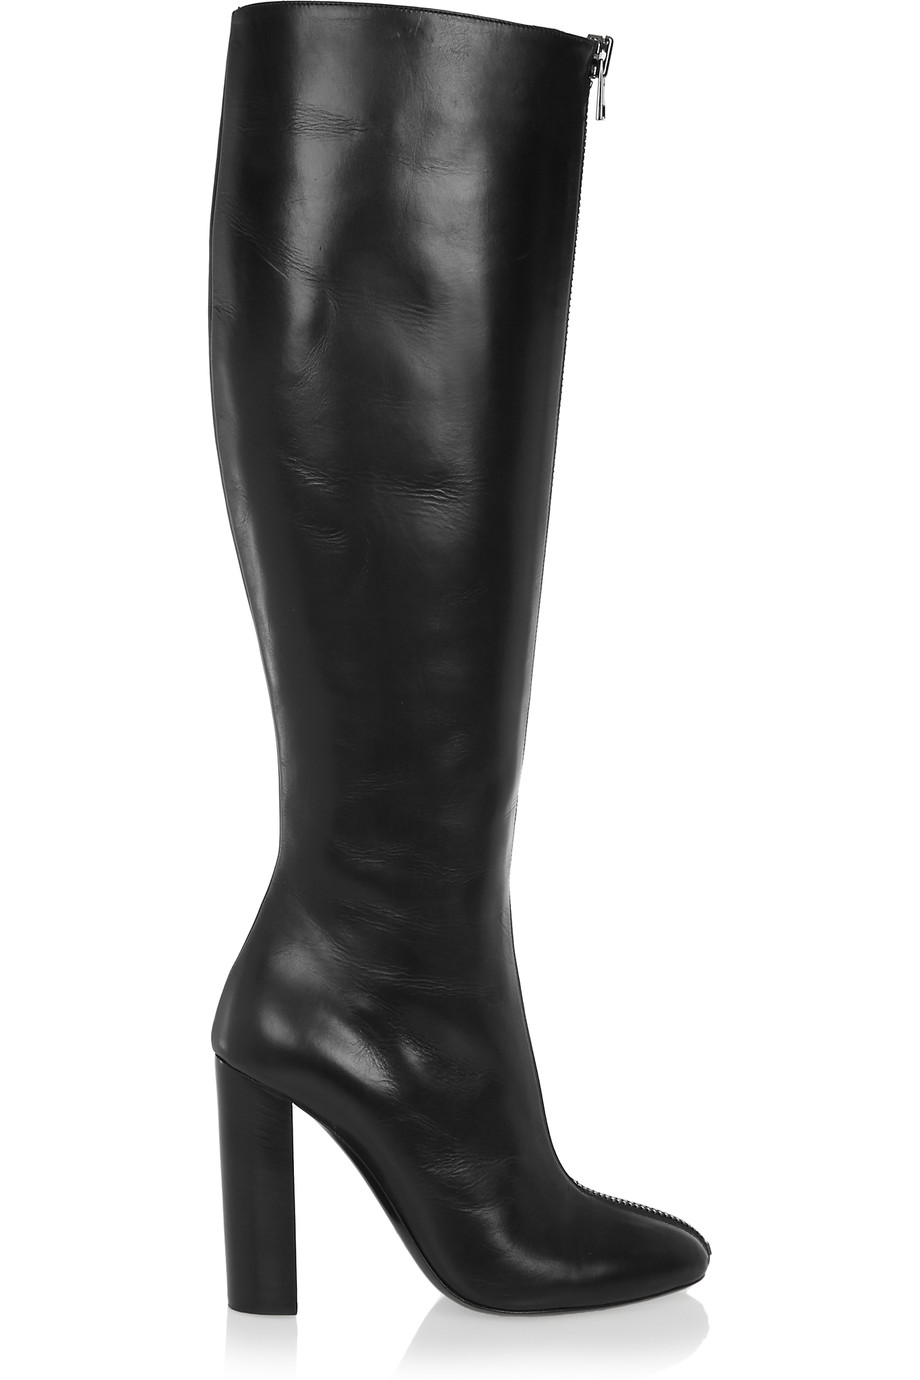 2017 Жените Црна Над Коленото Високи Чизми Дами Круг Пети Буци Пета Пред Патент Висока Пета Стилски Зимски Чевли Плус